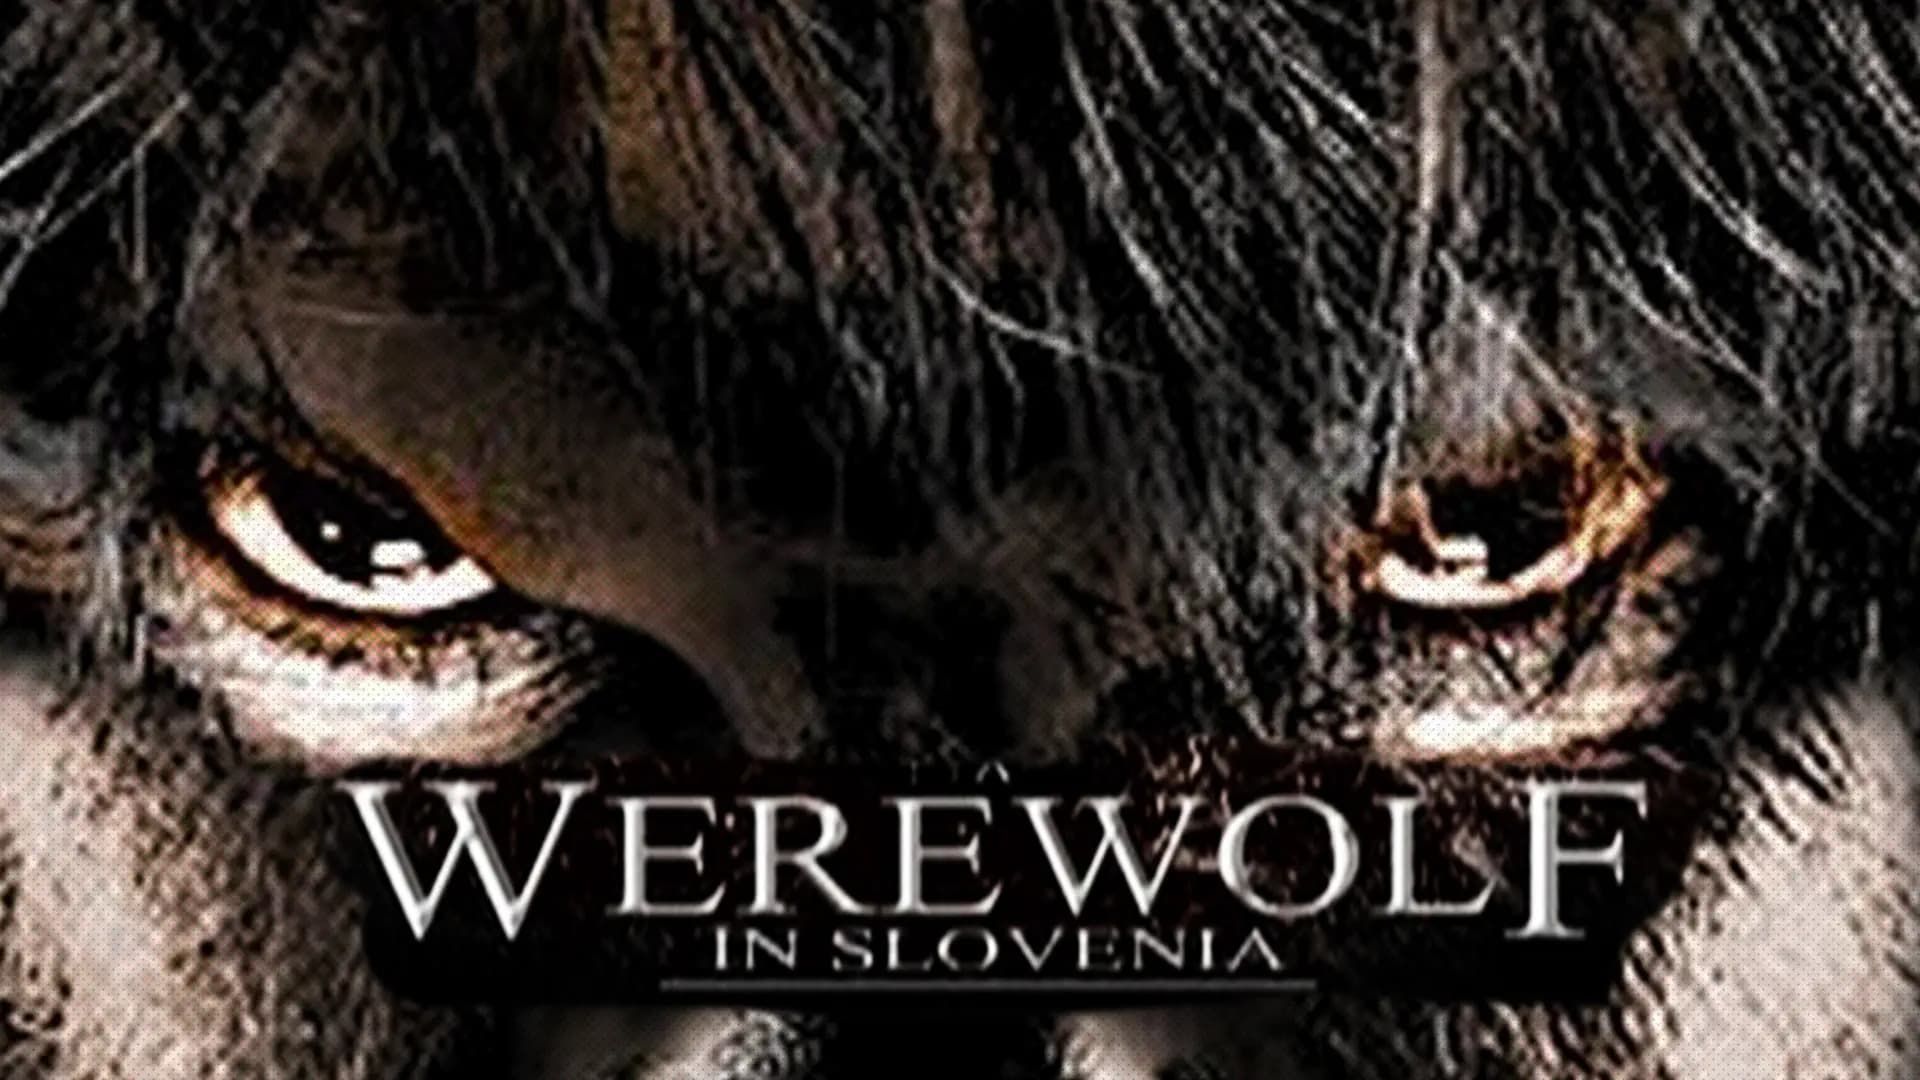 A Werewolf in Slovenia background